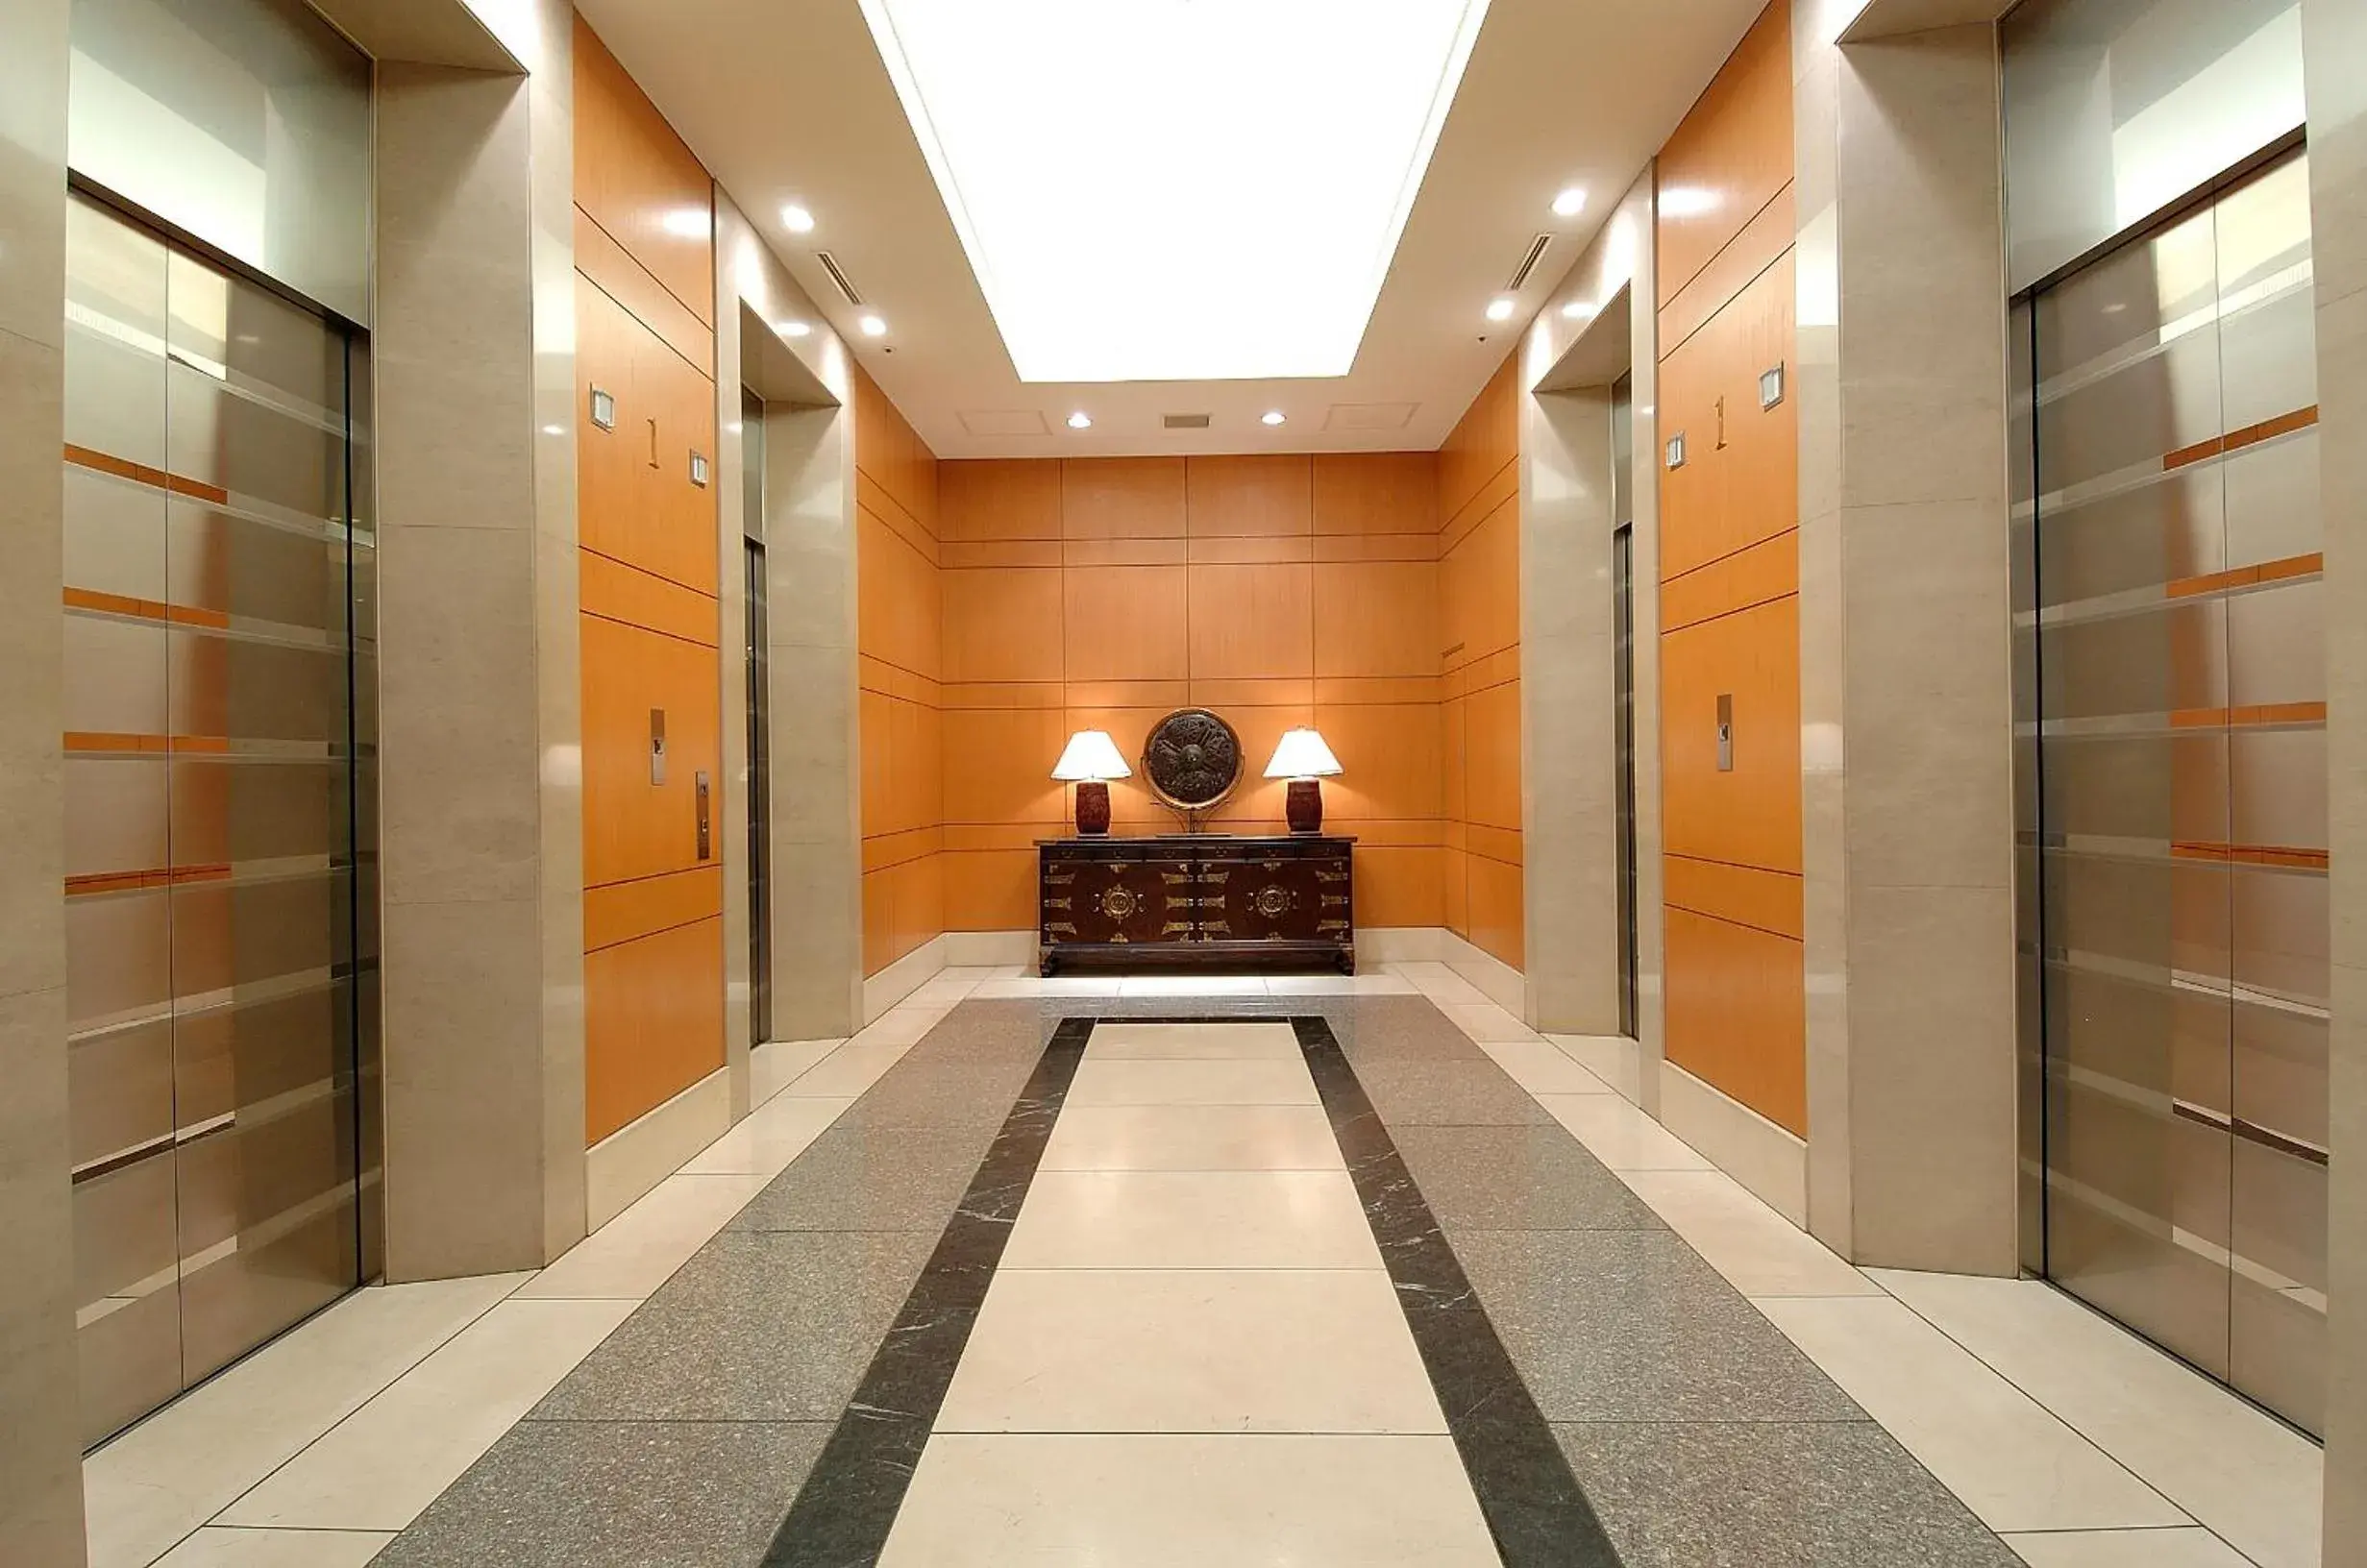 Lobby or reception in Dai-ichi Hotel Ryogoku